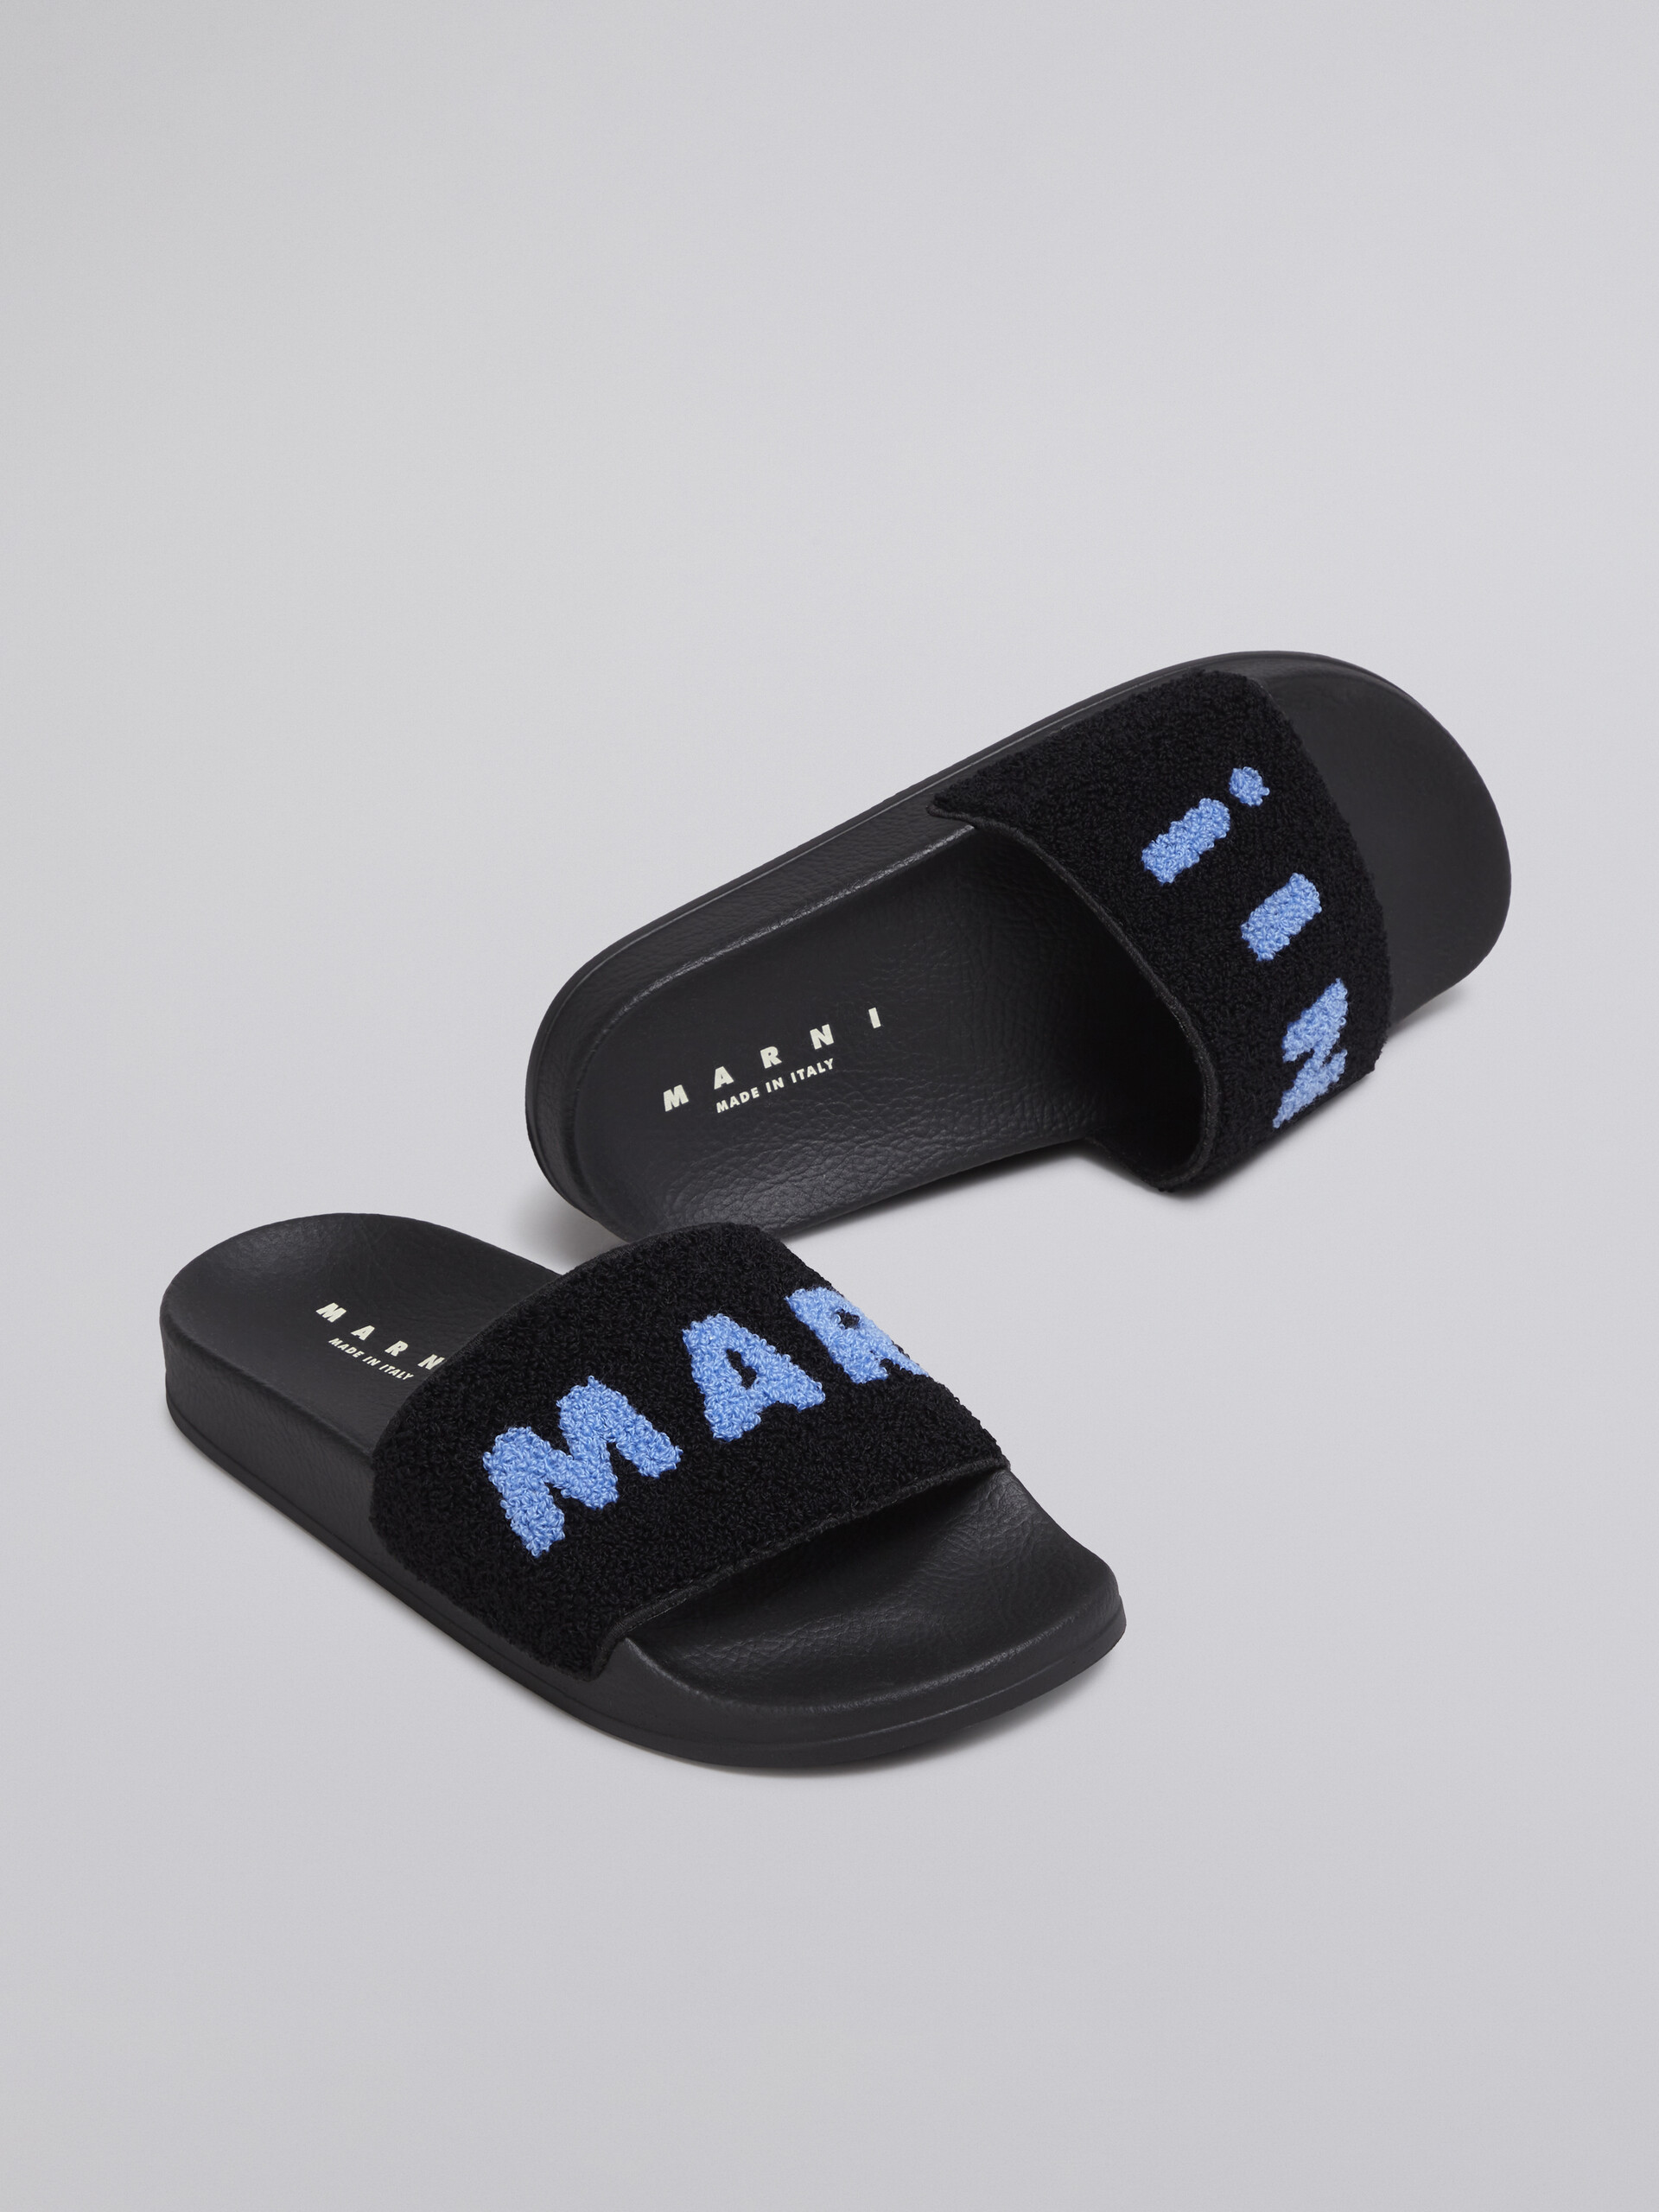 Sandalo in gomma con fascia in spugna nero e blu - Sandali - Image 5